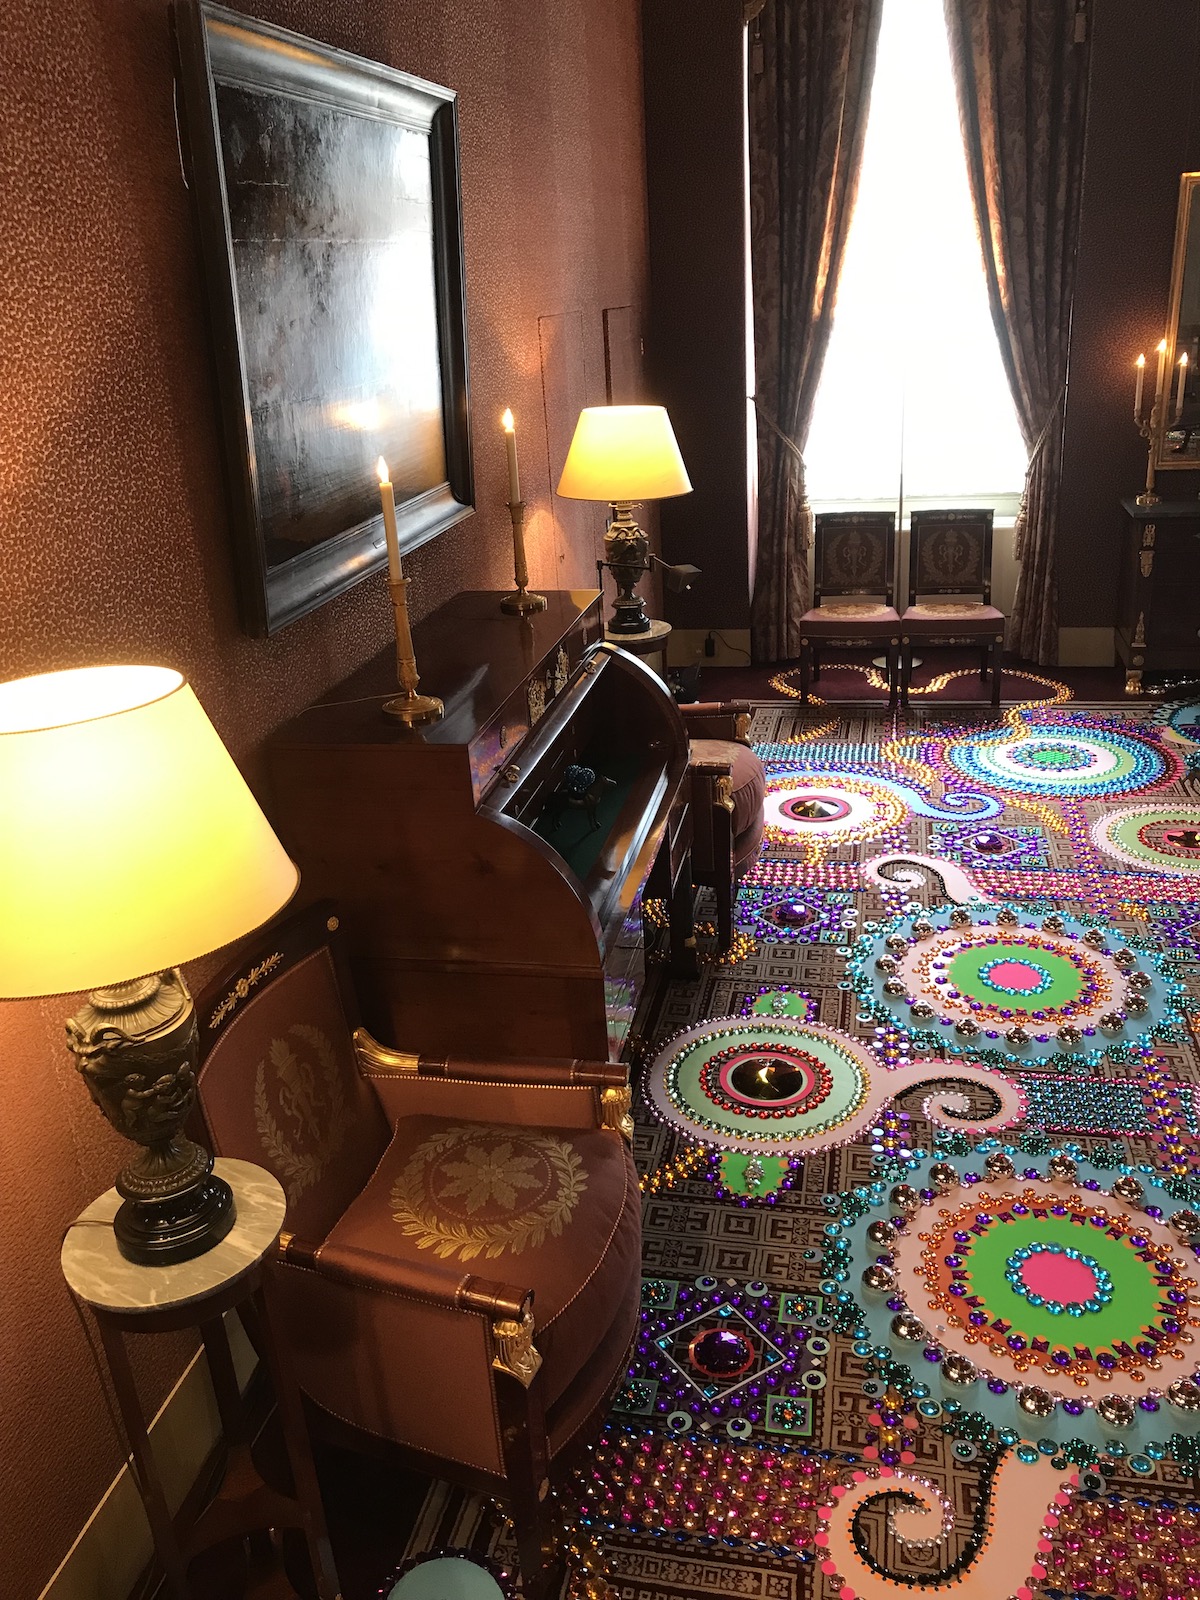 Carpet Gem Art Installation by Suzan Drummen